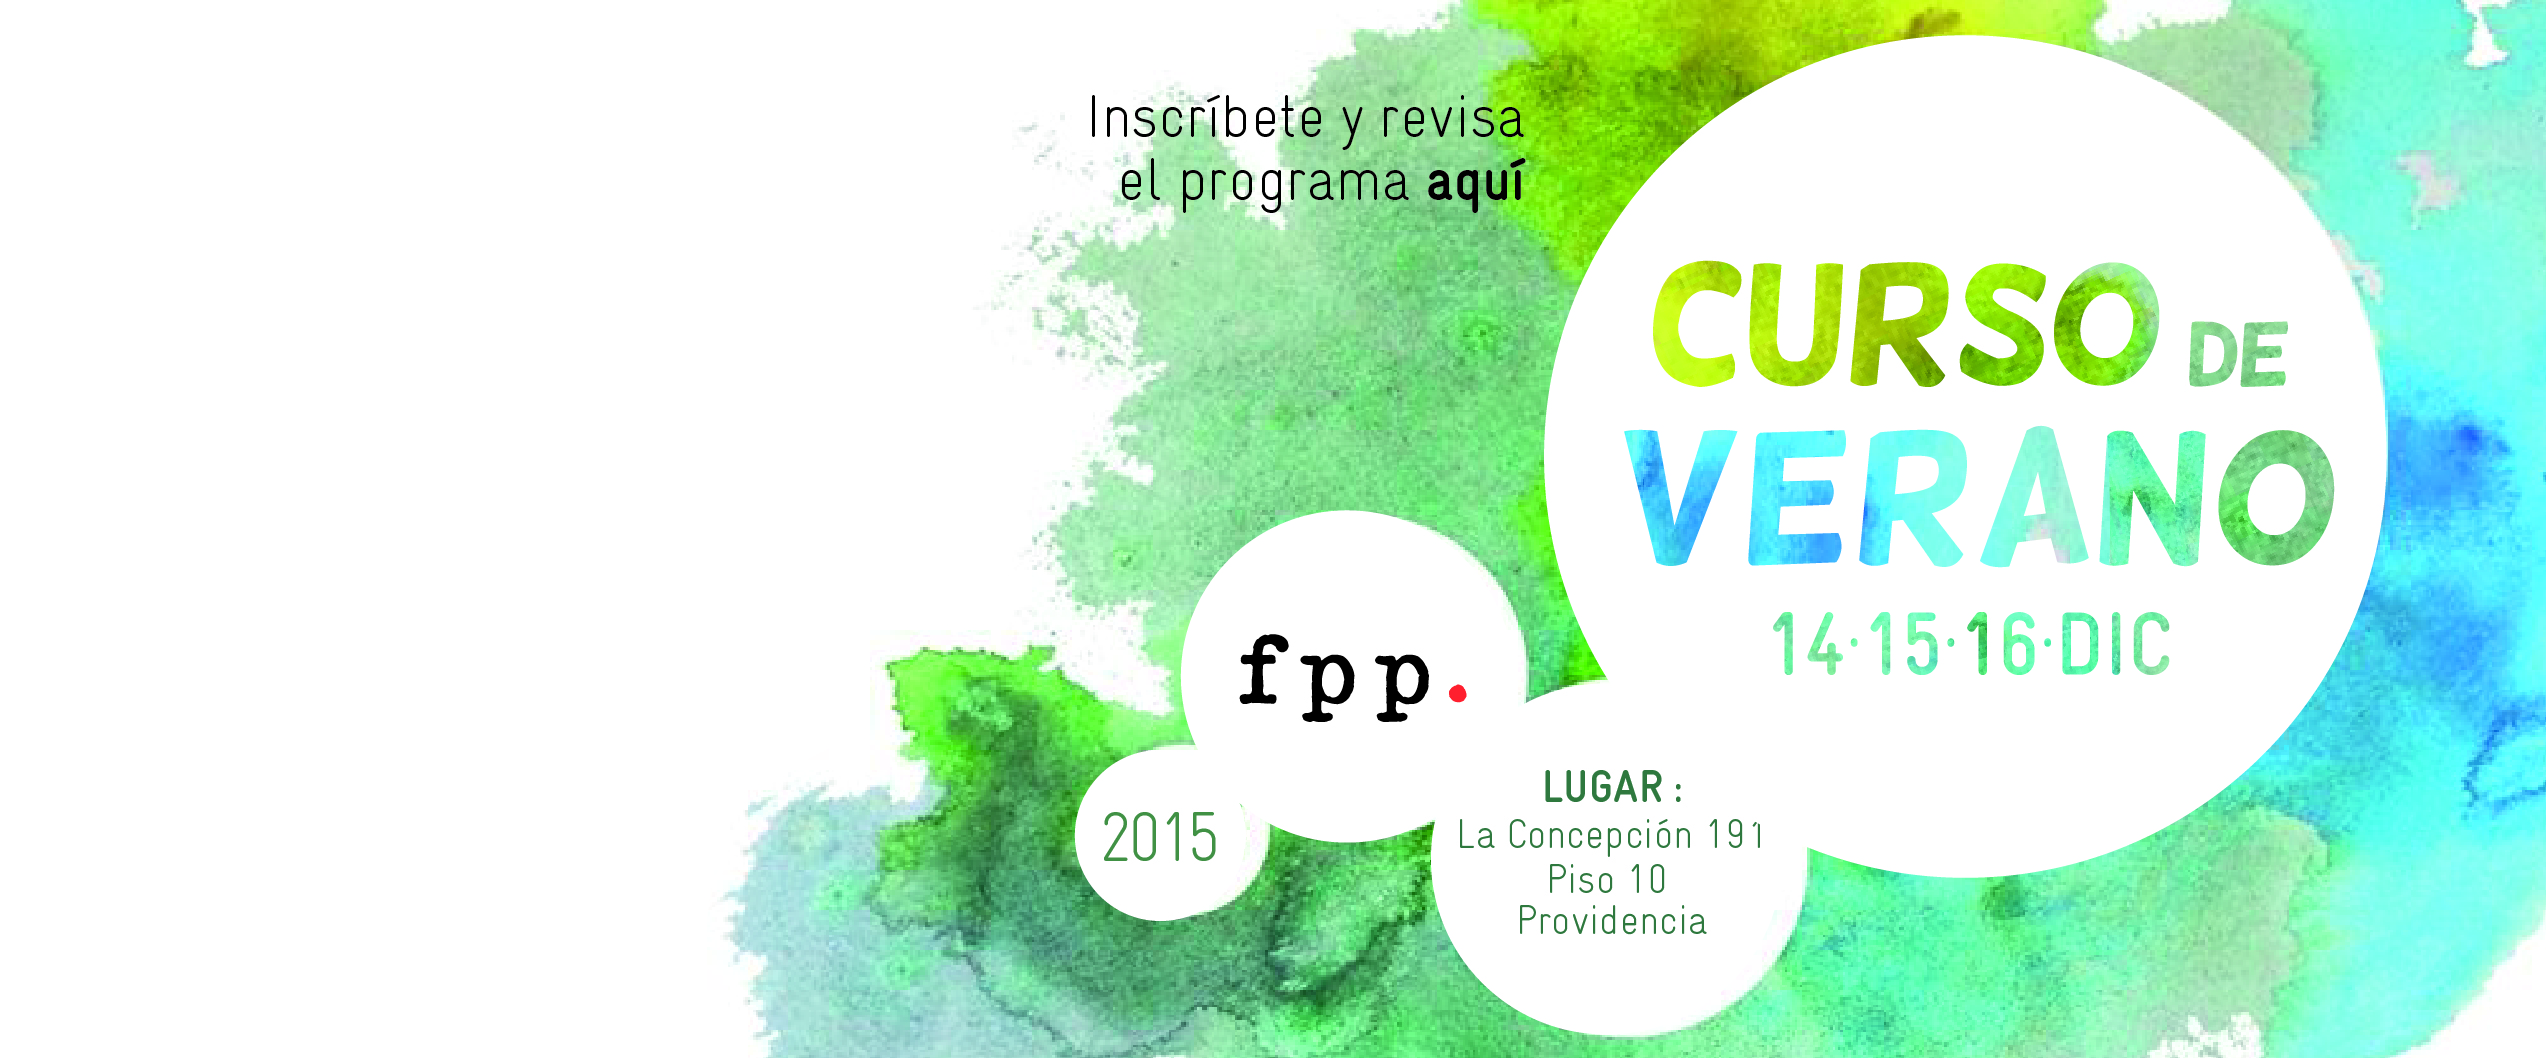 Postulaciones Abiertas: Curso de Verano FPP 2015